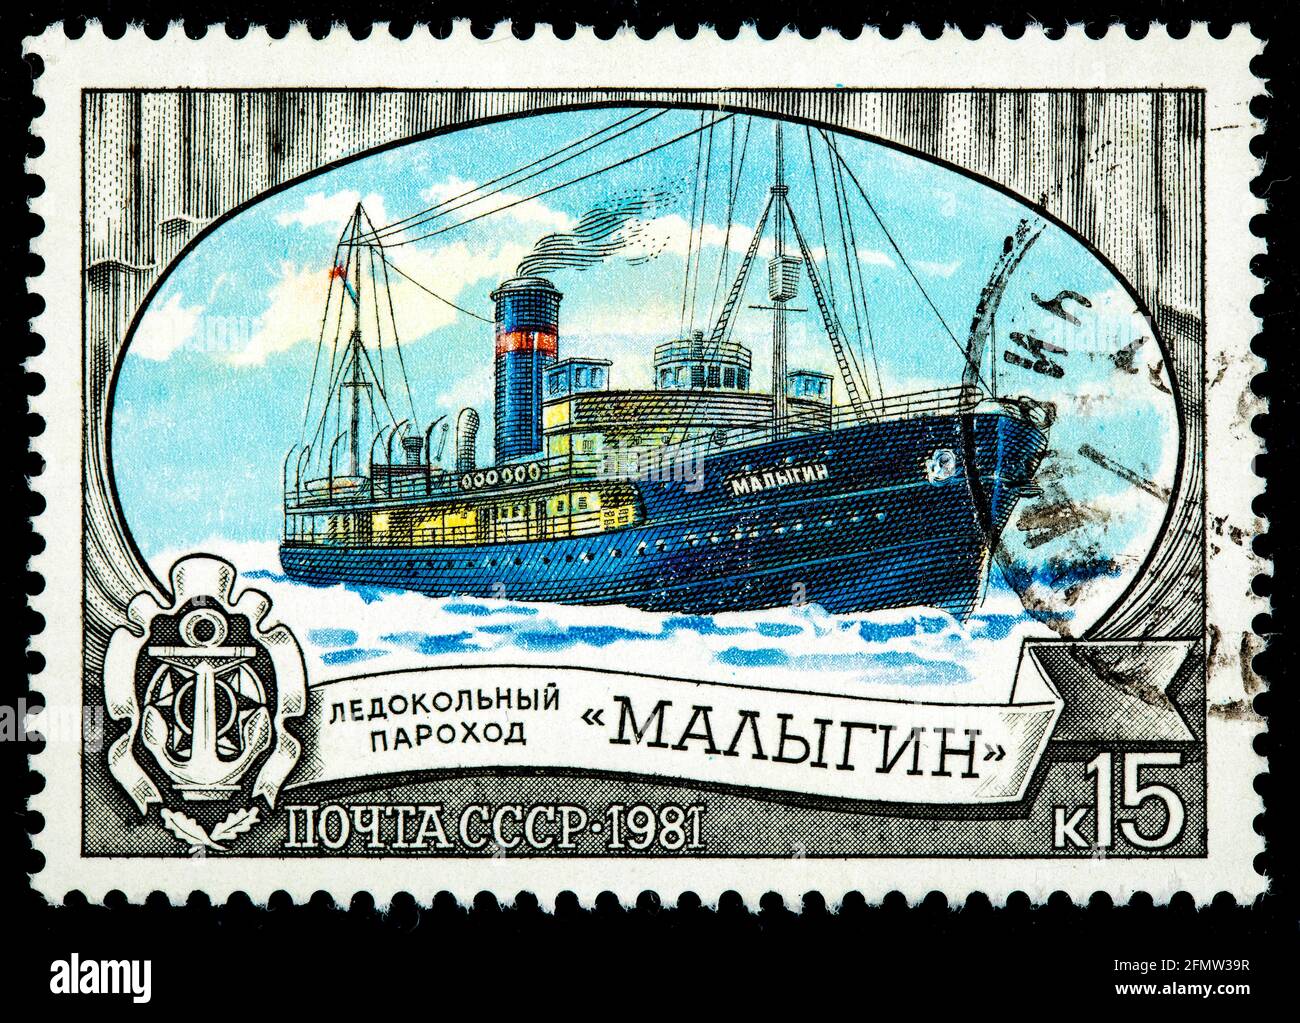 URSS - ALREDEDOR de 1977: Un sello impreso en la URSS muestra el buque rompehielos ruso Lena rompiendo hielo en el Ártico, alrededor de 1977 Foto de stock